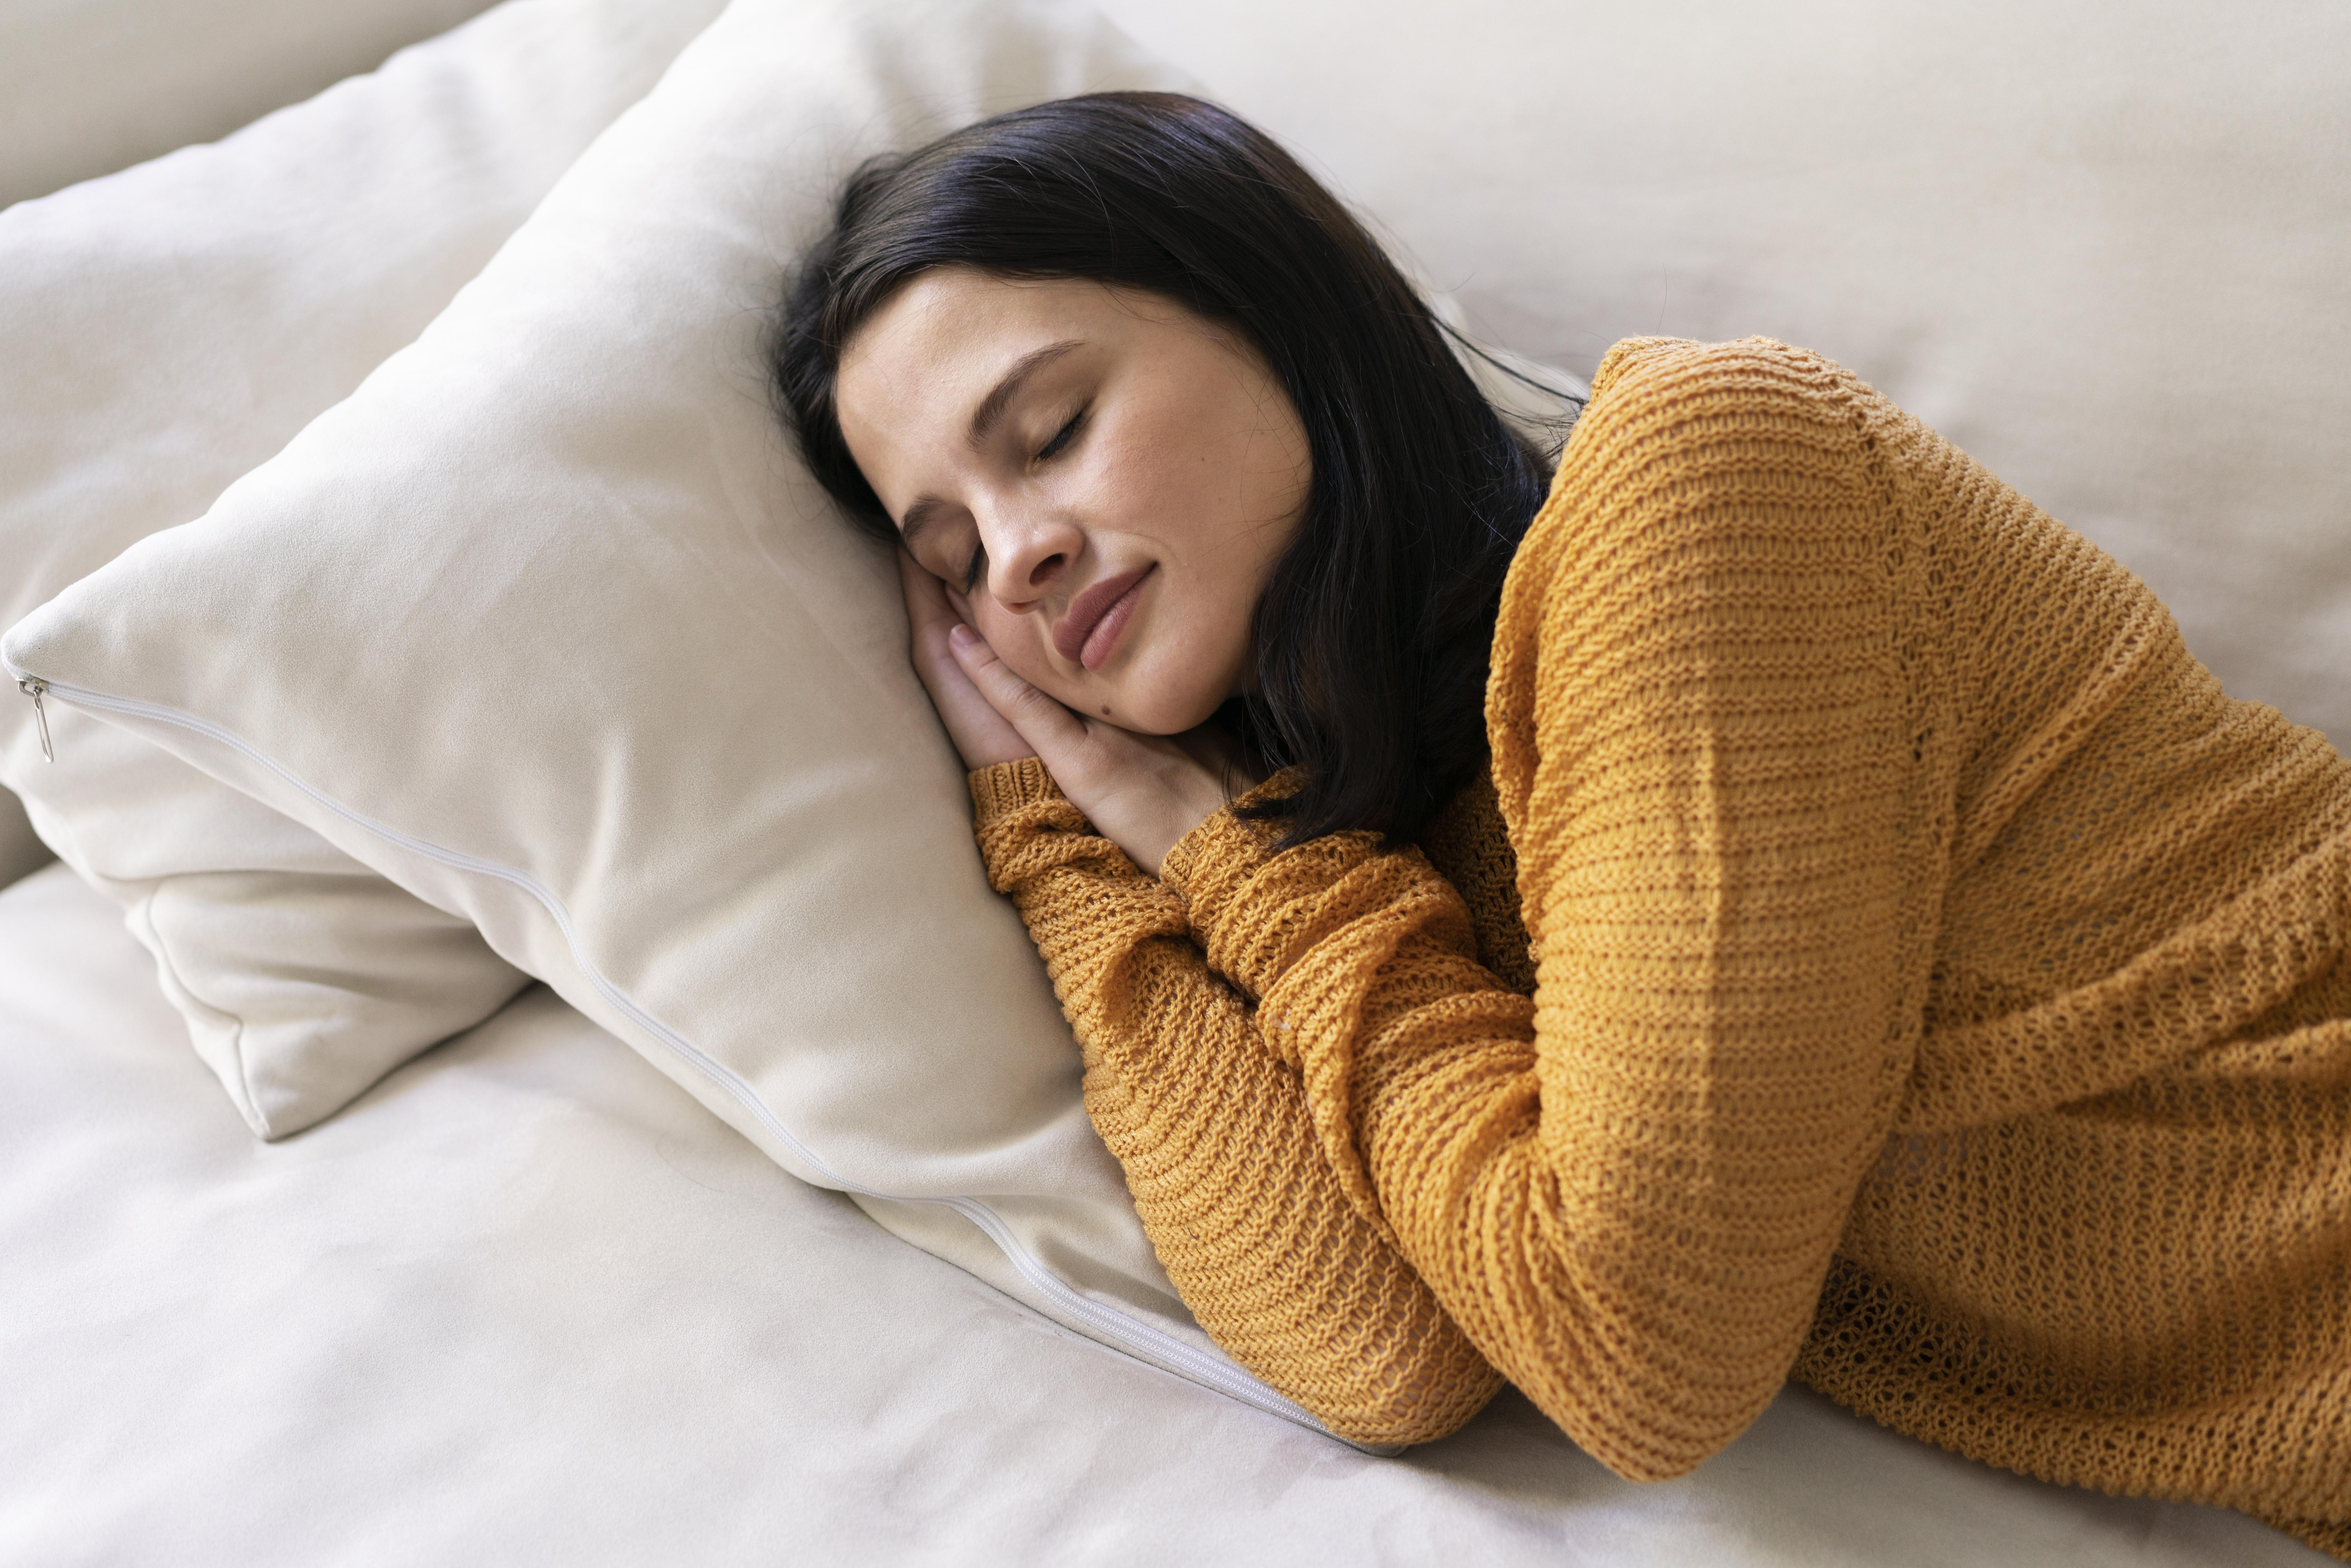 Benefits of Mucuna Pruriens - Improves Sleep